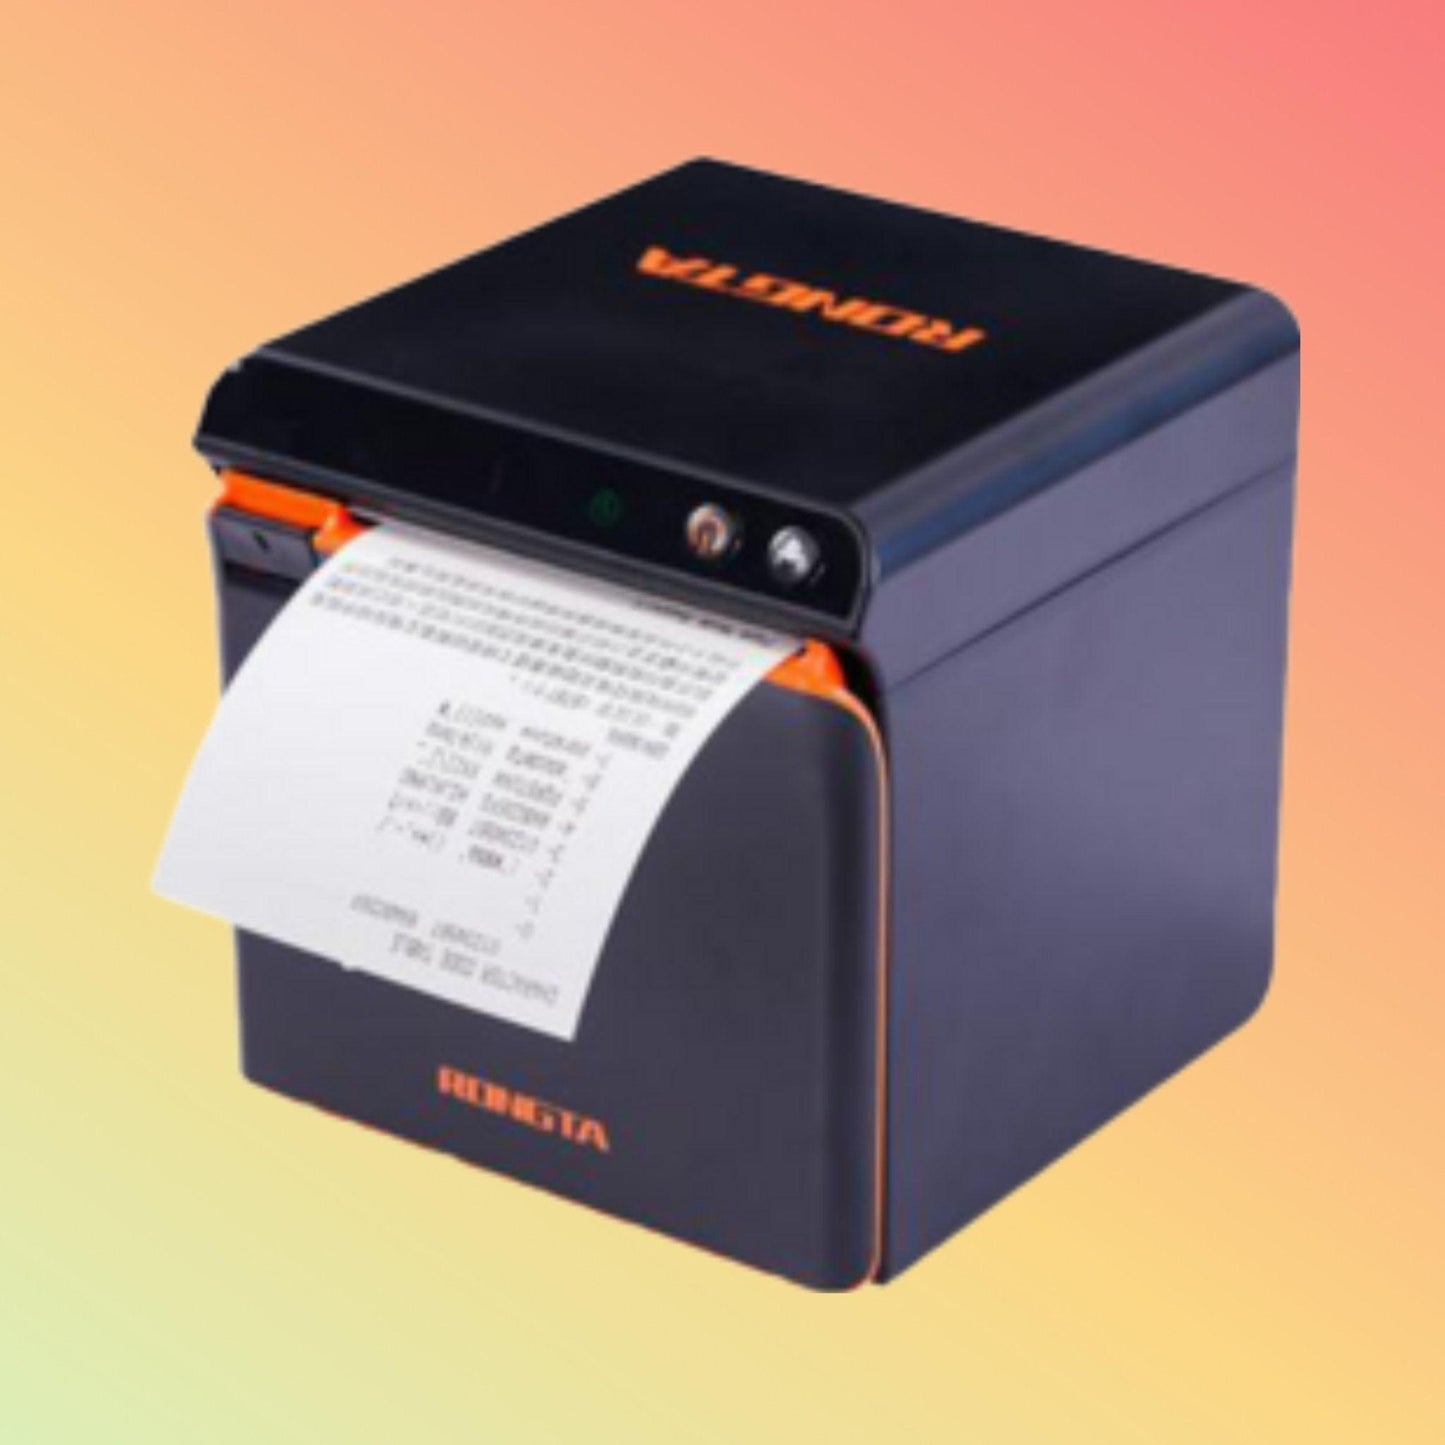 Receipt Printer - Rongta Ace H1 - Neotech